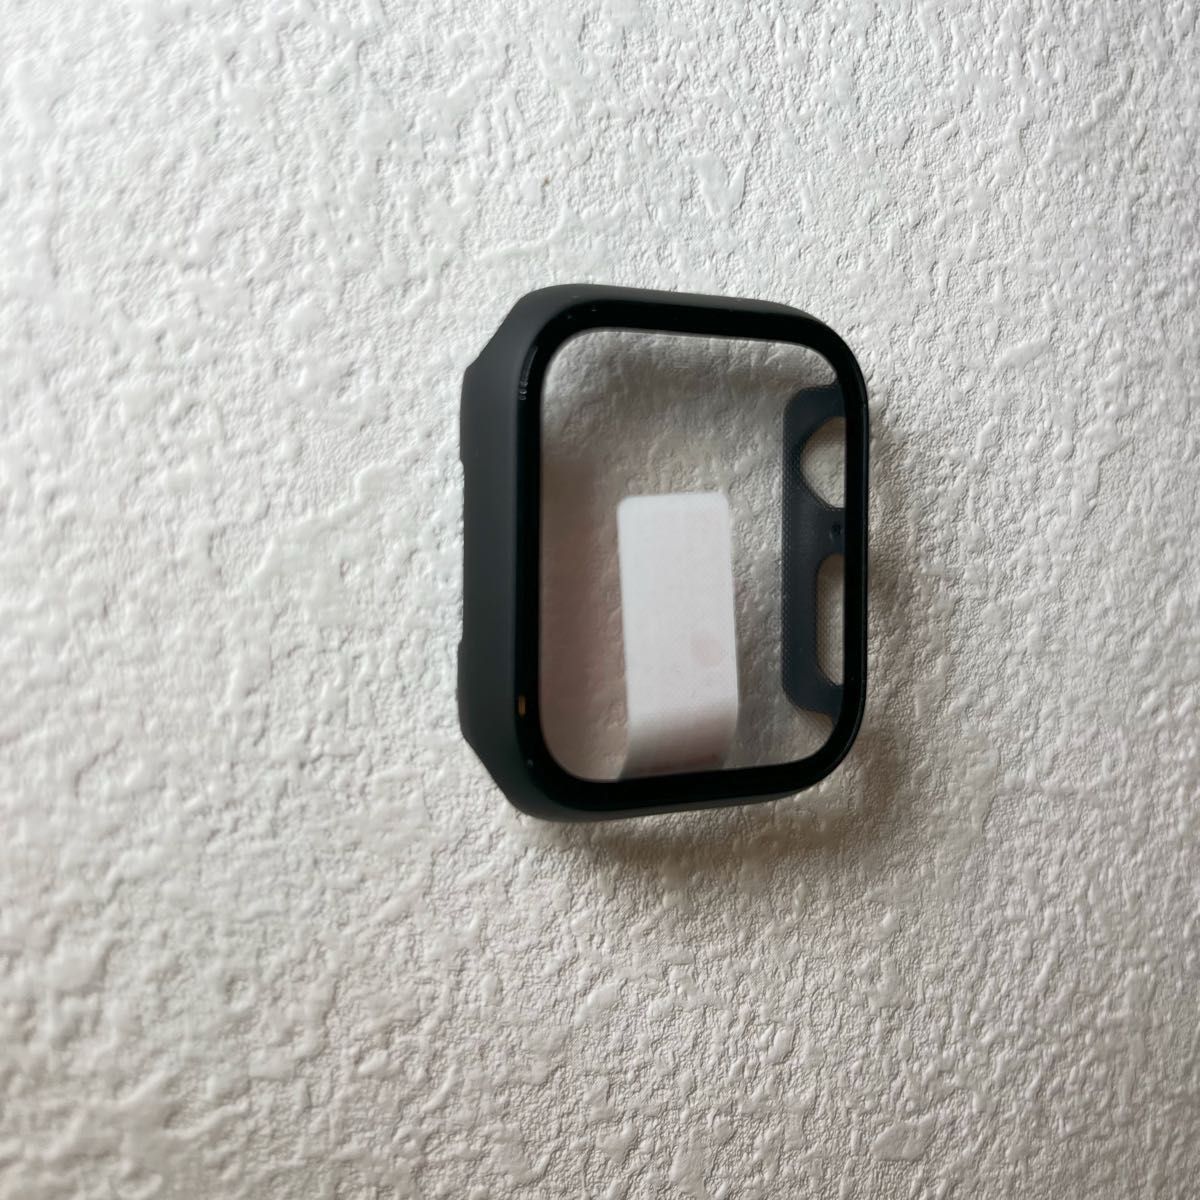 Apple watchアップルウォッチケース カバー 男女Series 7/8/9 ブラック マット 41mm